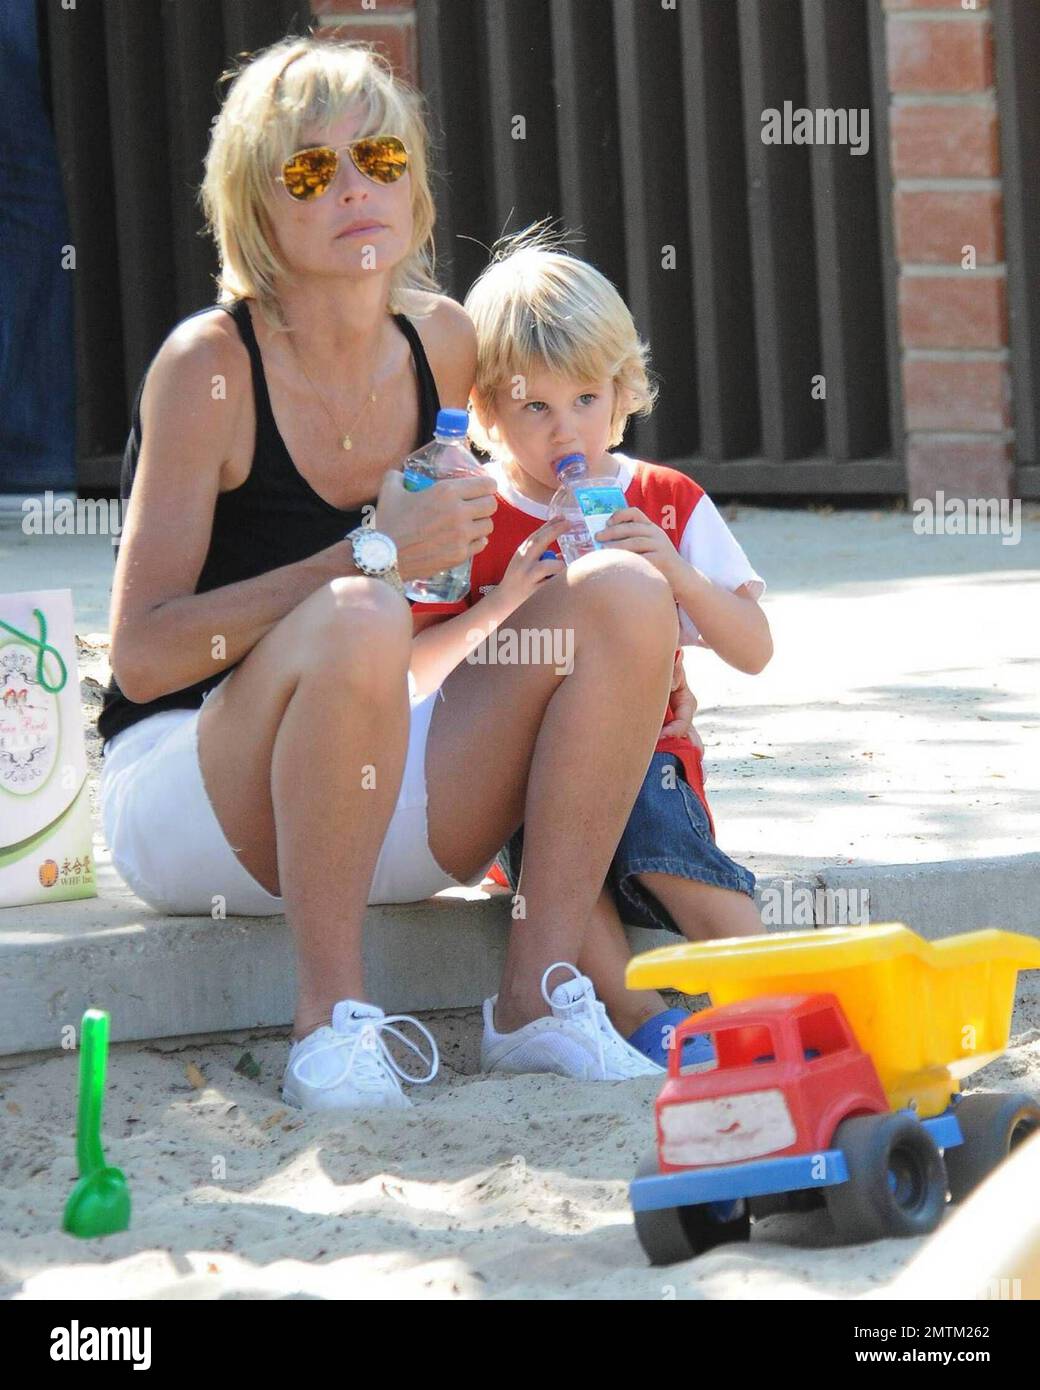 - Sharon Stone emmène ses 3 fils Roan, Laird et Quinn au parc. Los Angeles, Californie 7/31/09. Banque D'Images